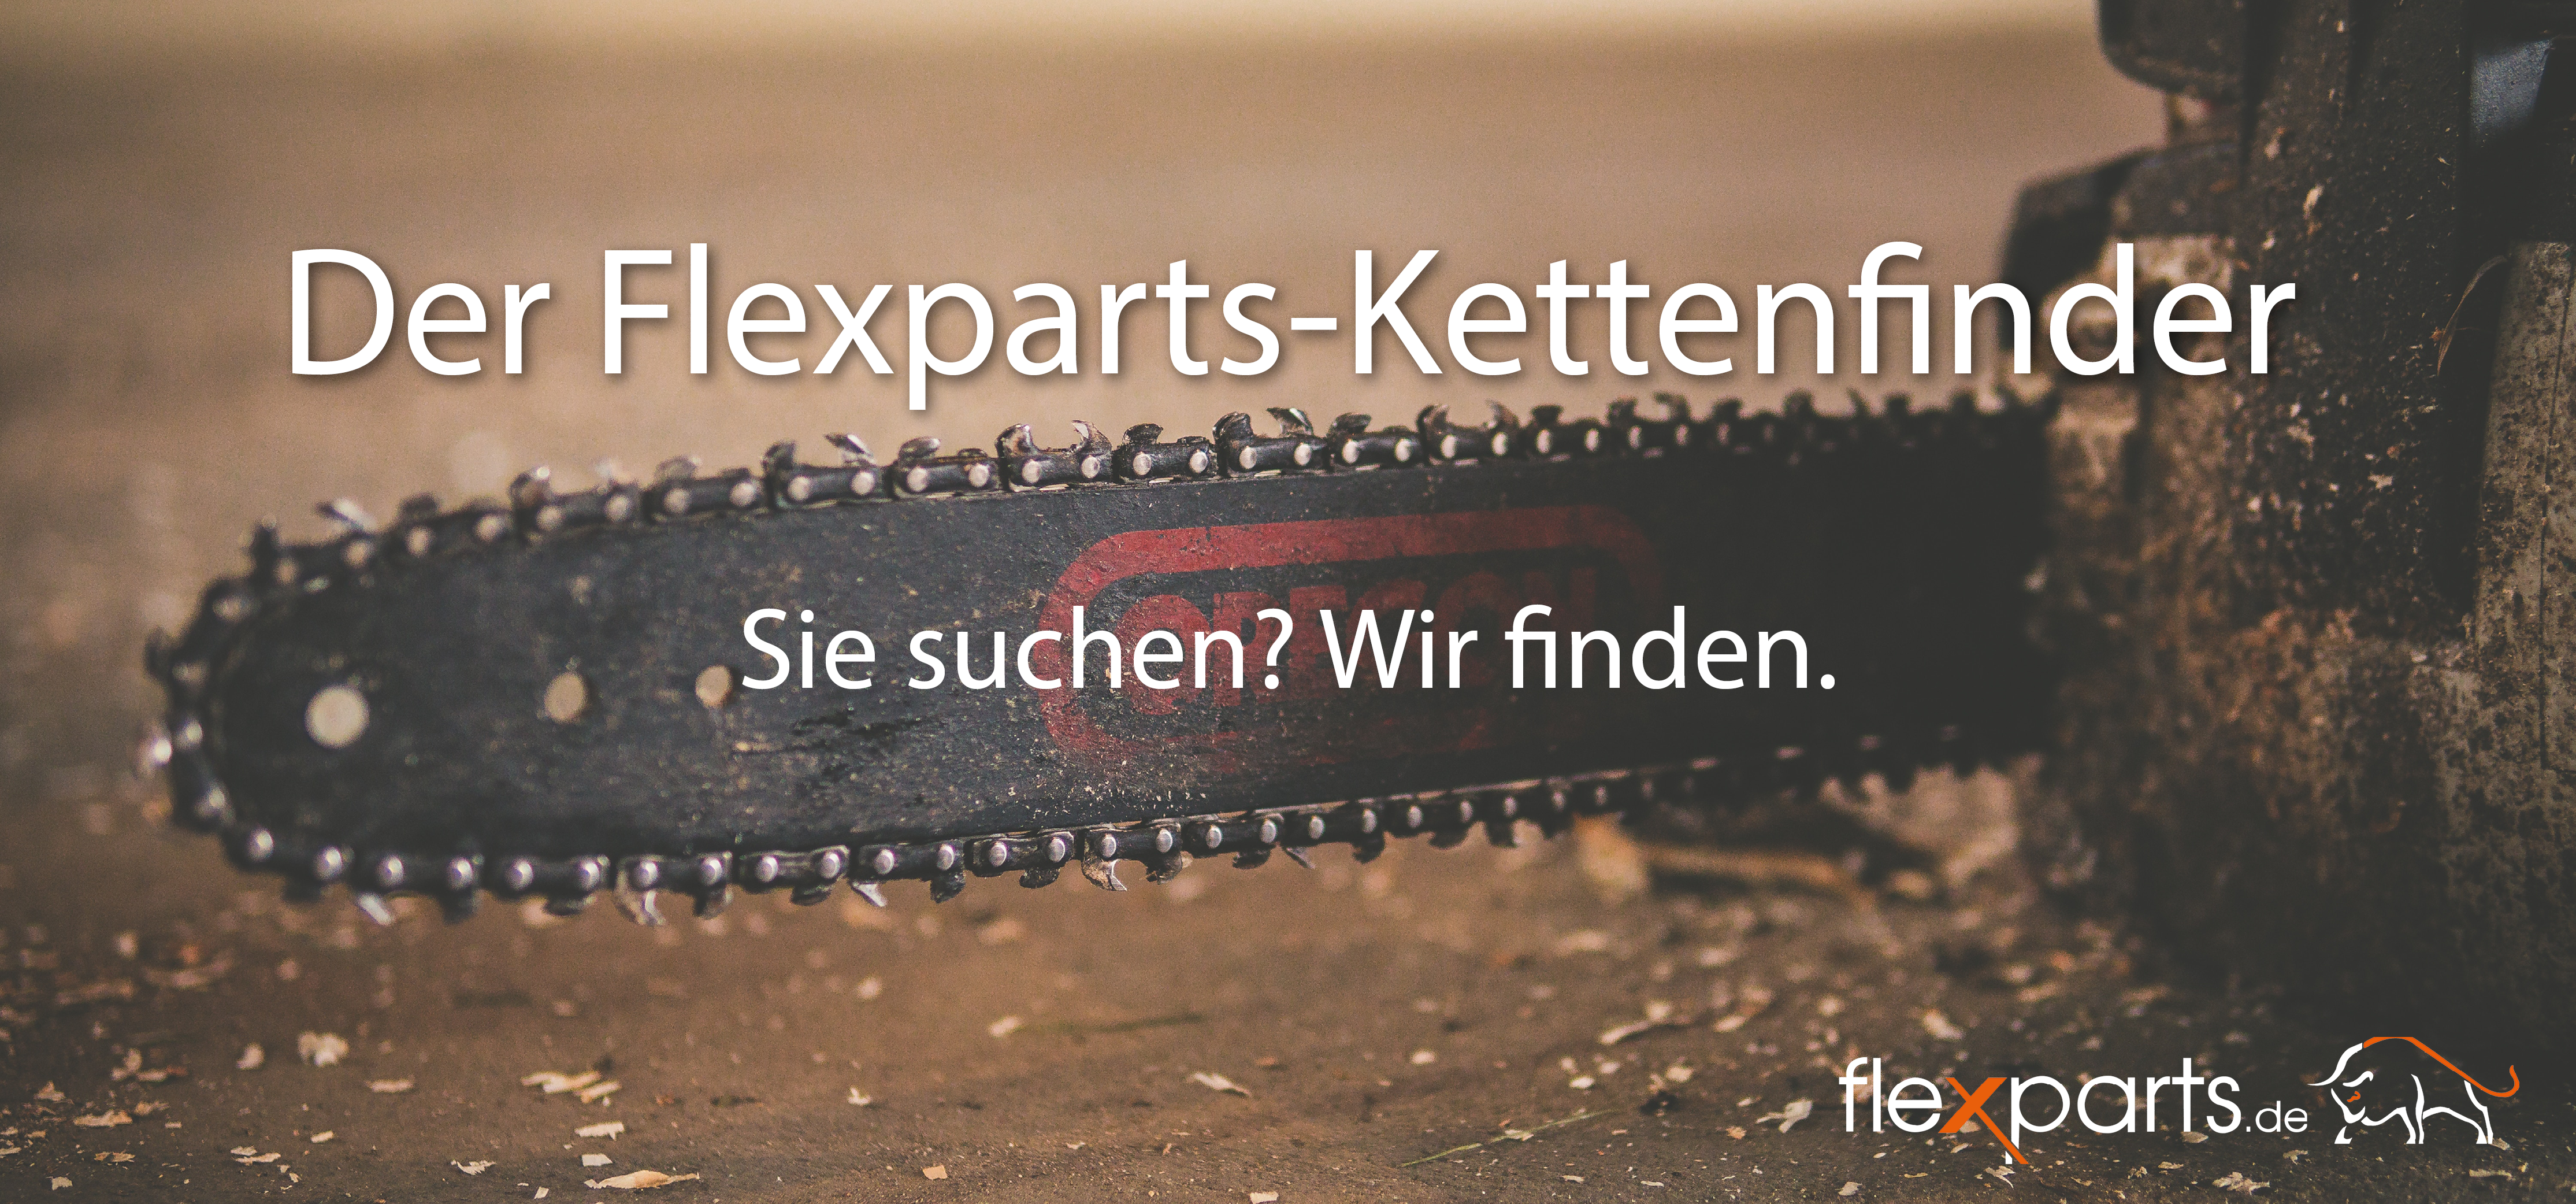 Flexparts-Kettenfinder